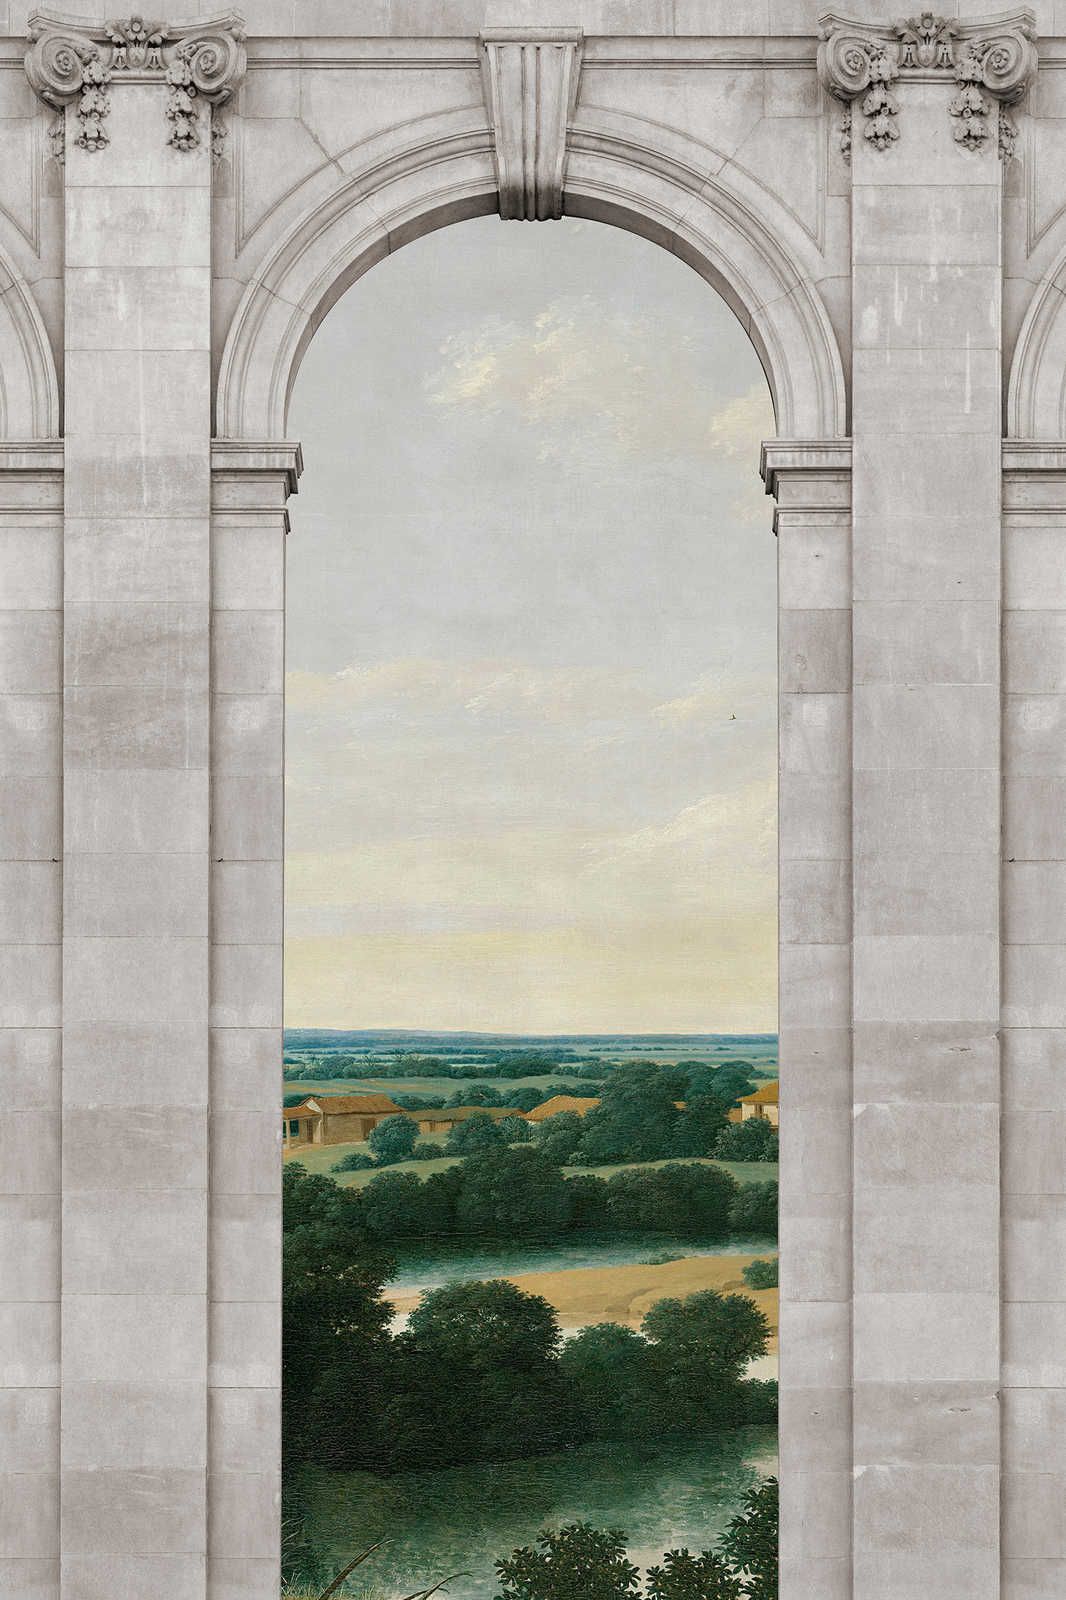             Castello 2 - Fenêtre Toile Arc & Vue Paysage - 0,90 m x 0,60 m
        